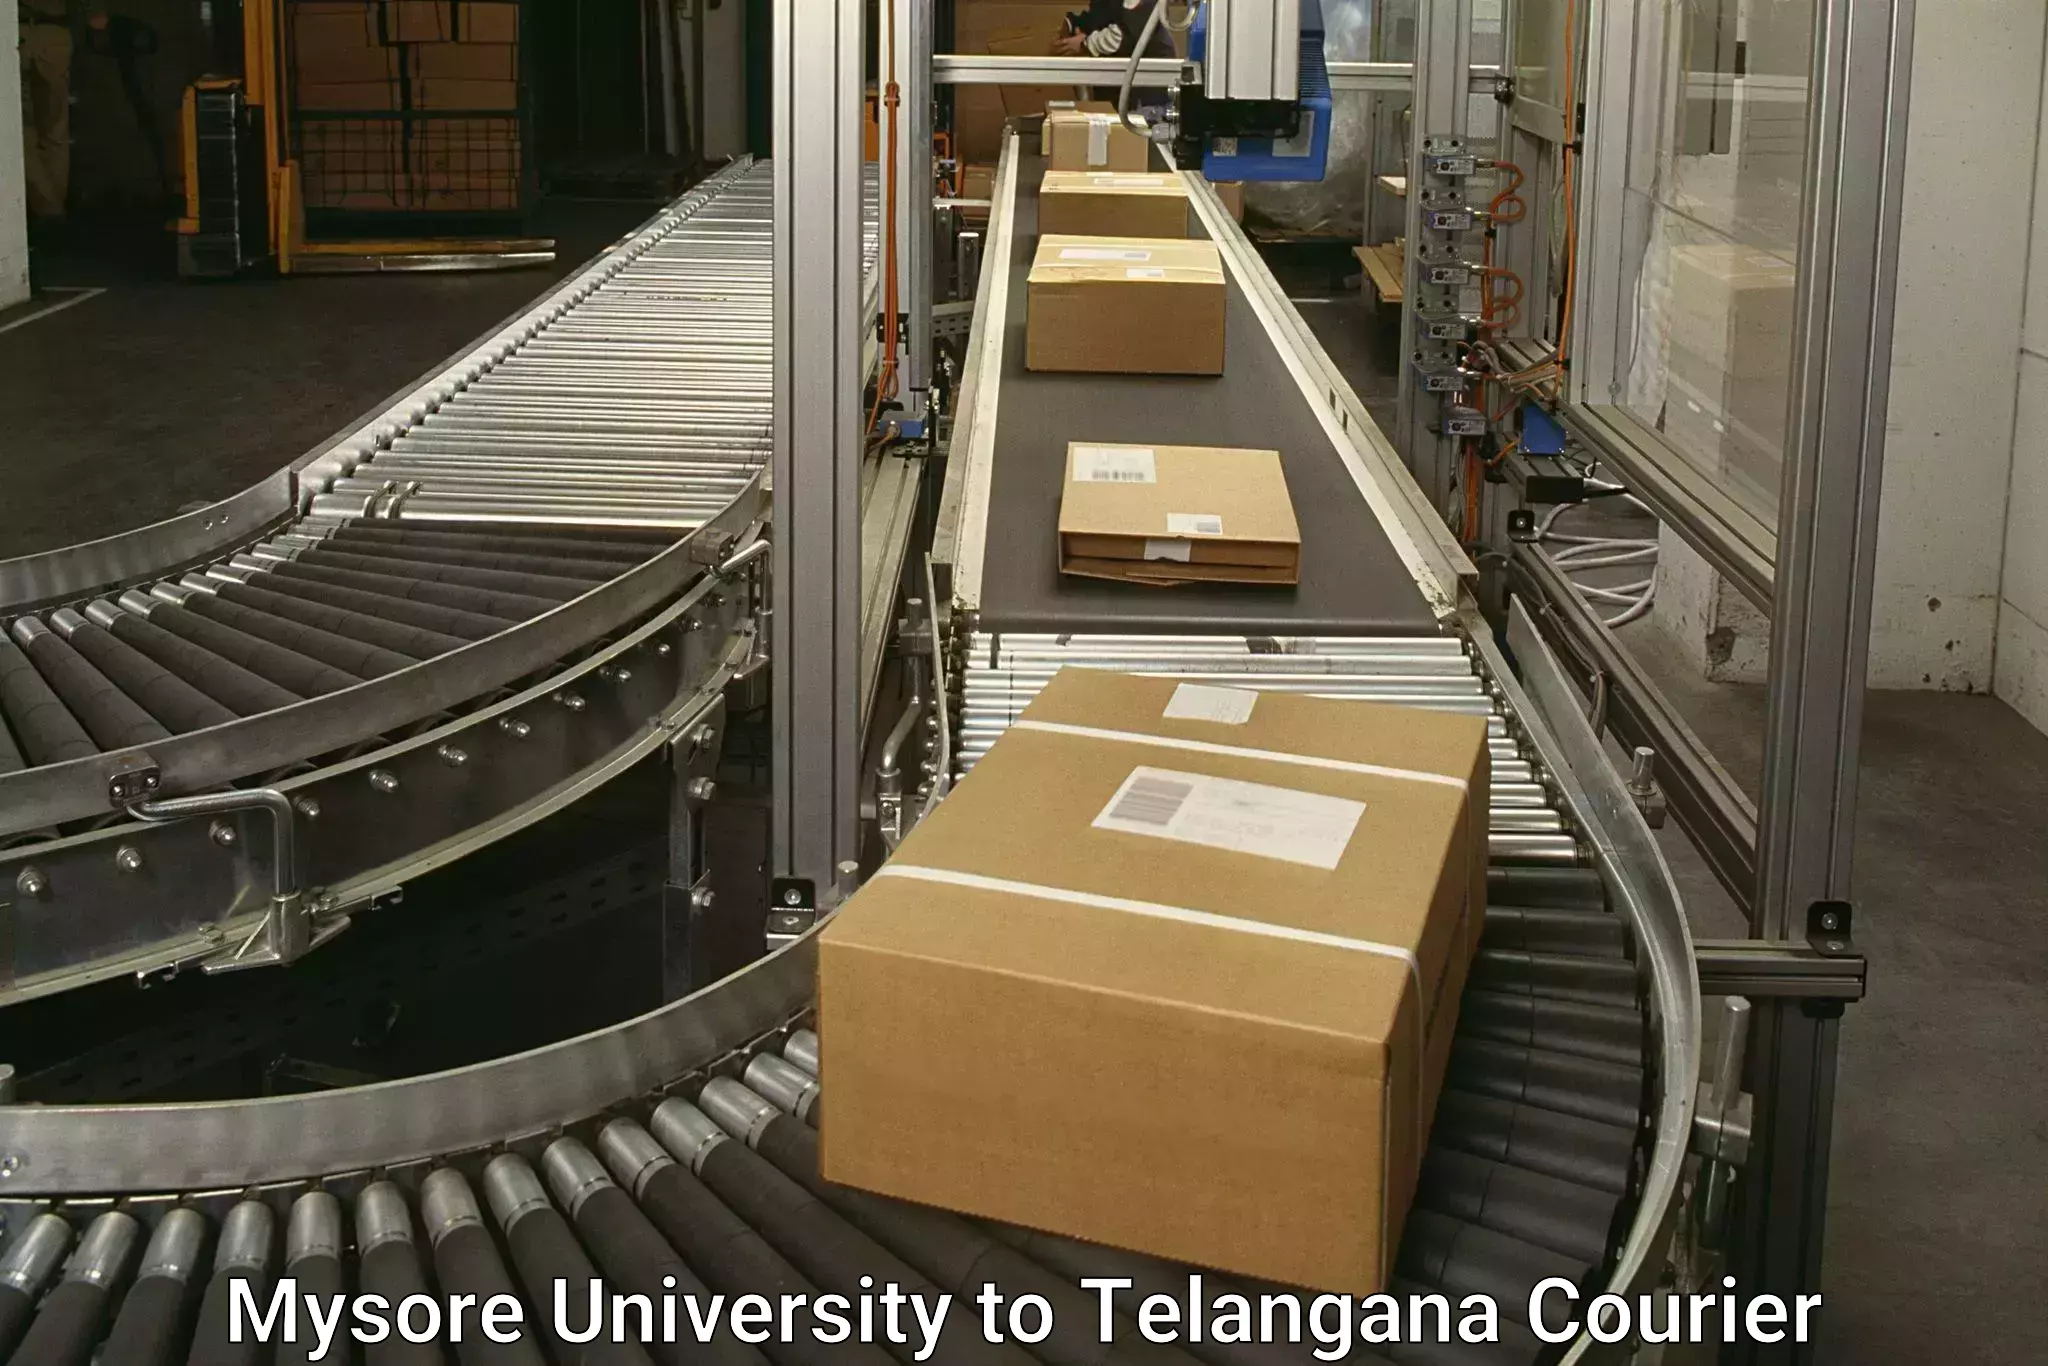 Cargo delivery service Mysore University to Yerrupalem